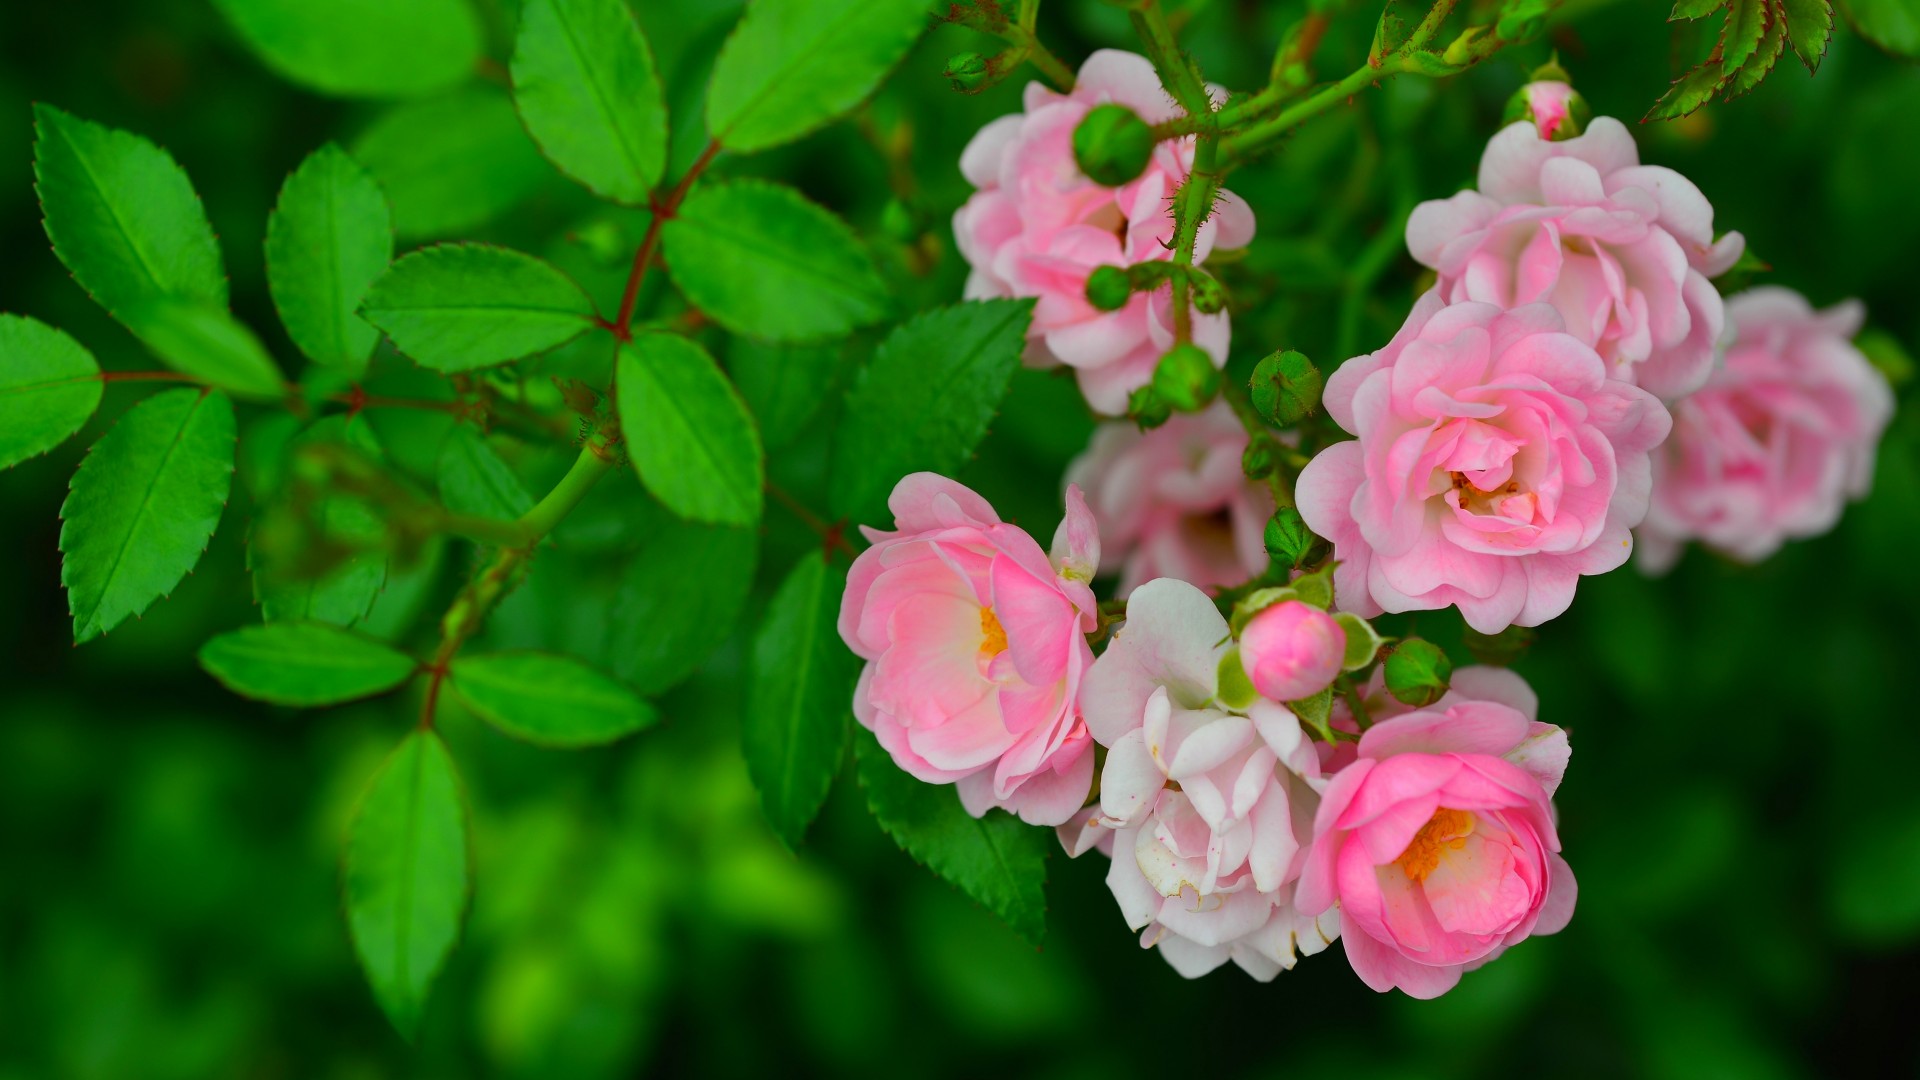 粉色玫瑰,枝条,绿叶叶子,玫瑰花壁纸